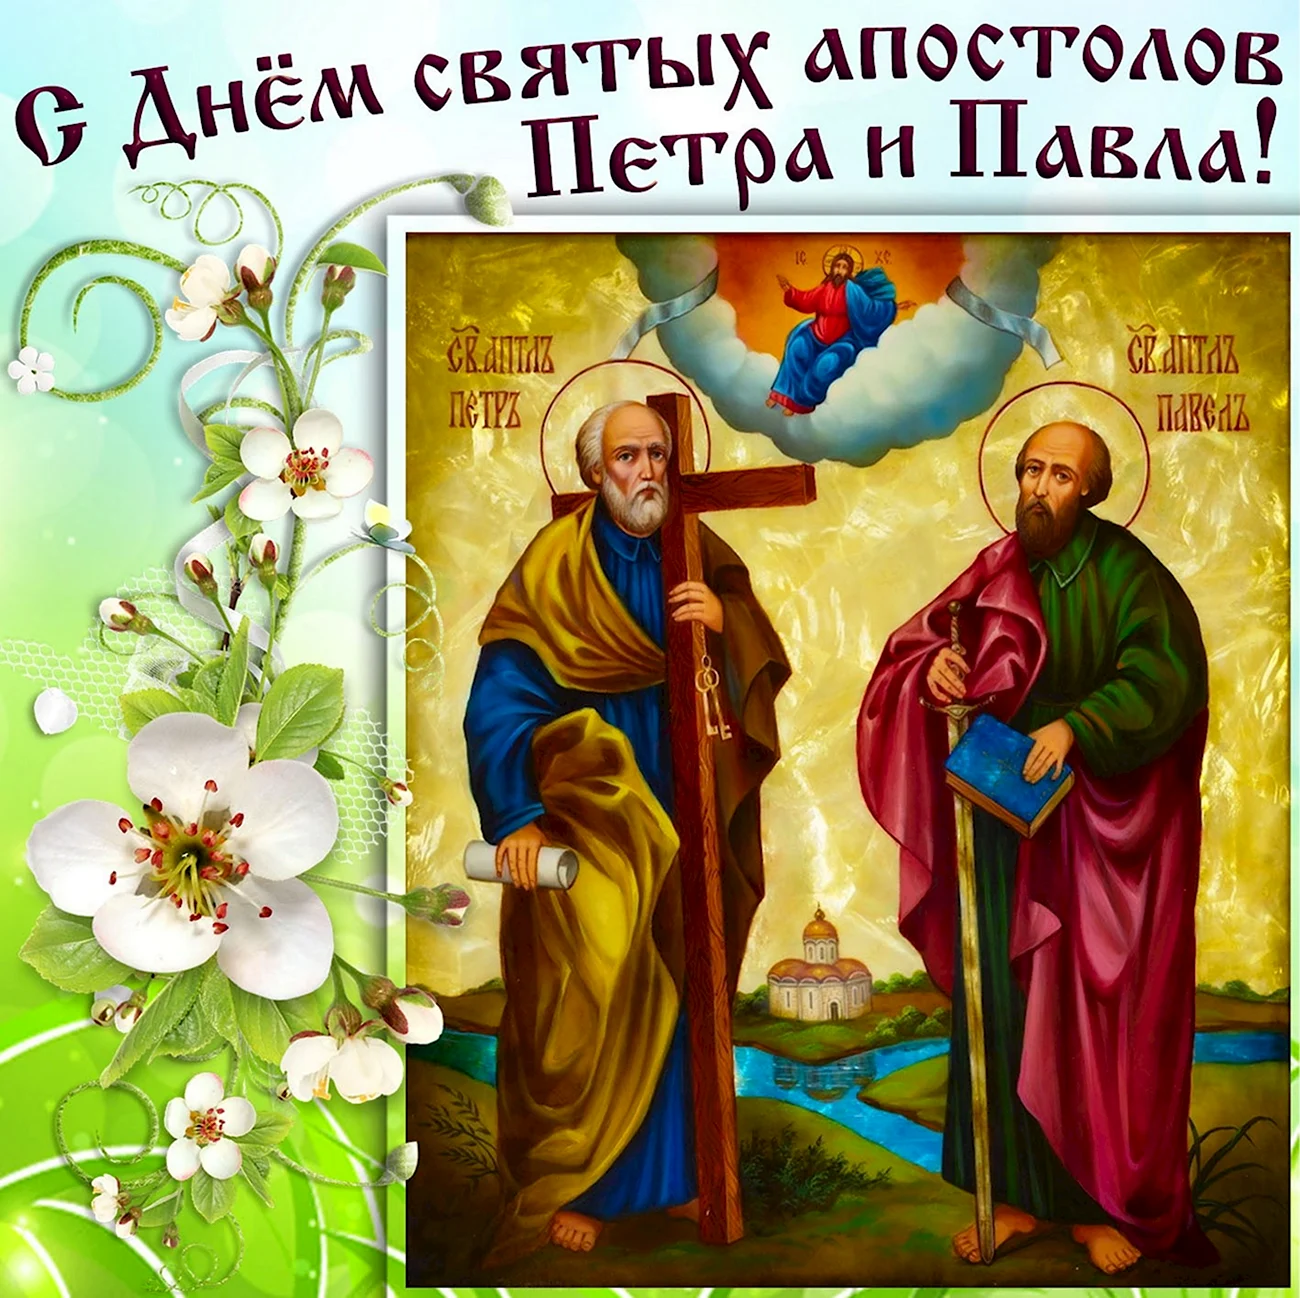 12 Июля день святых апостолов Петра и Павла. Поздравление